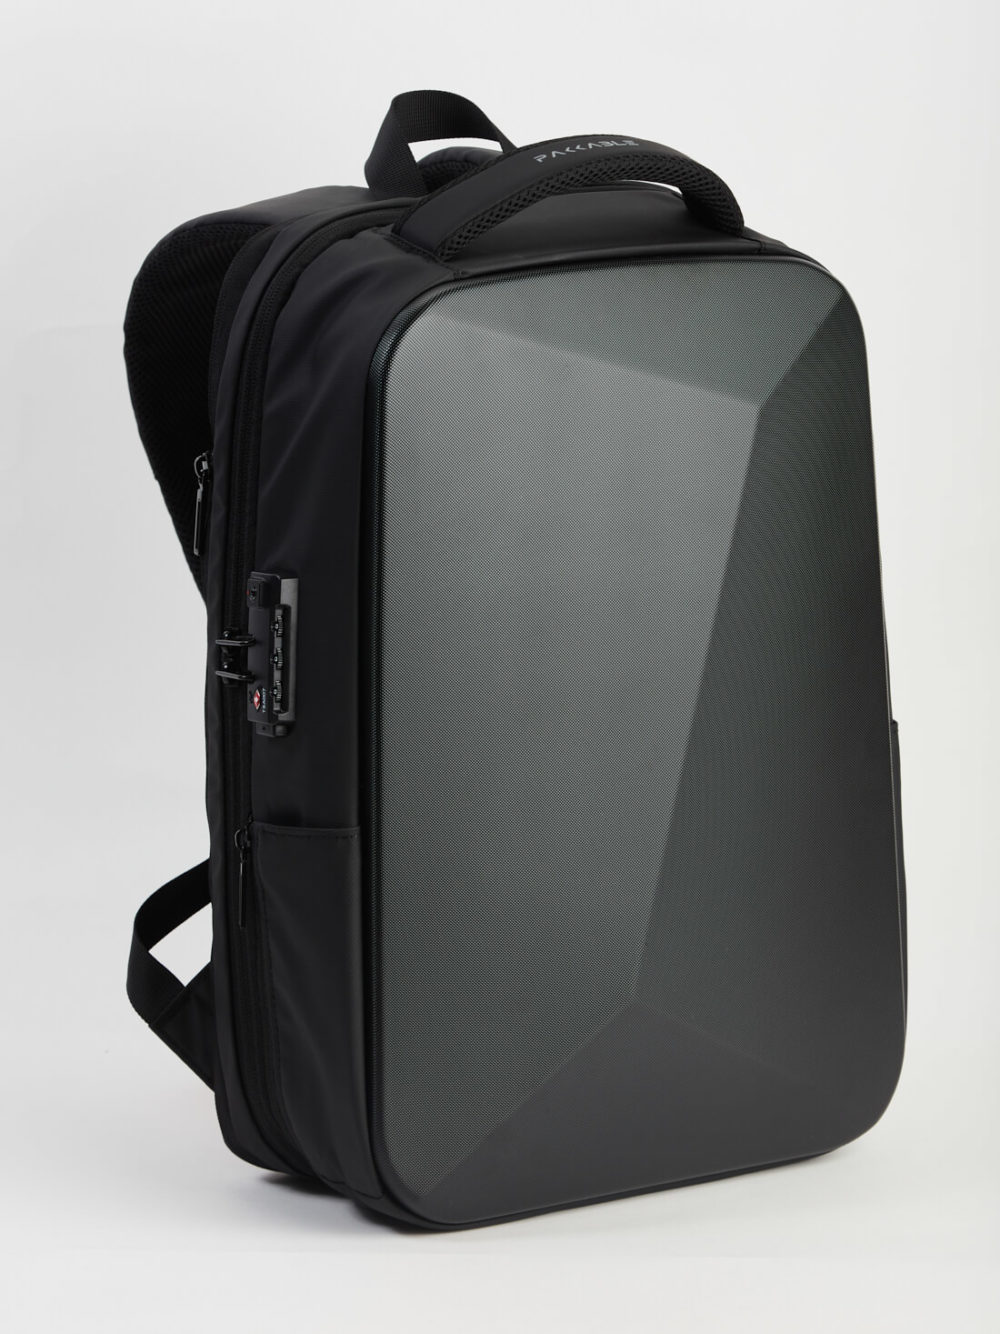 Un sac à dos noir simple et moderne avec un panneau texturé gris, doté d'une fermeture éclair sécurisée et d'une poignée solide.